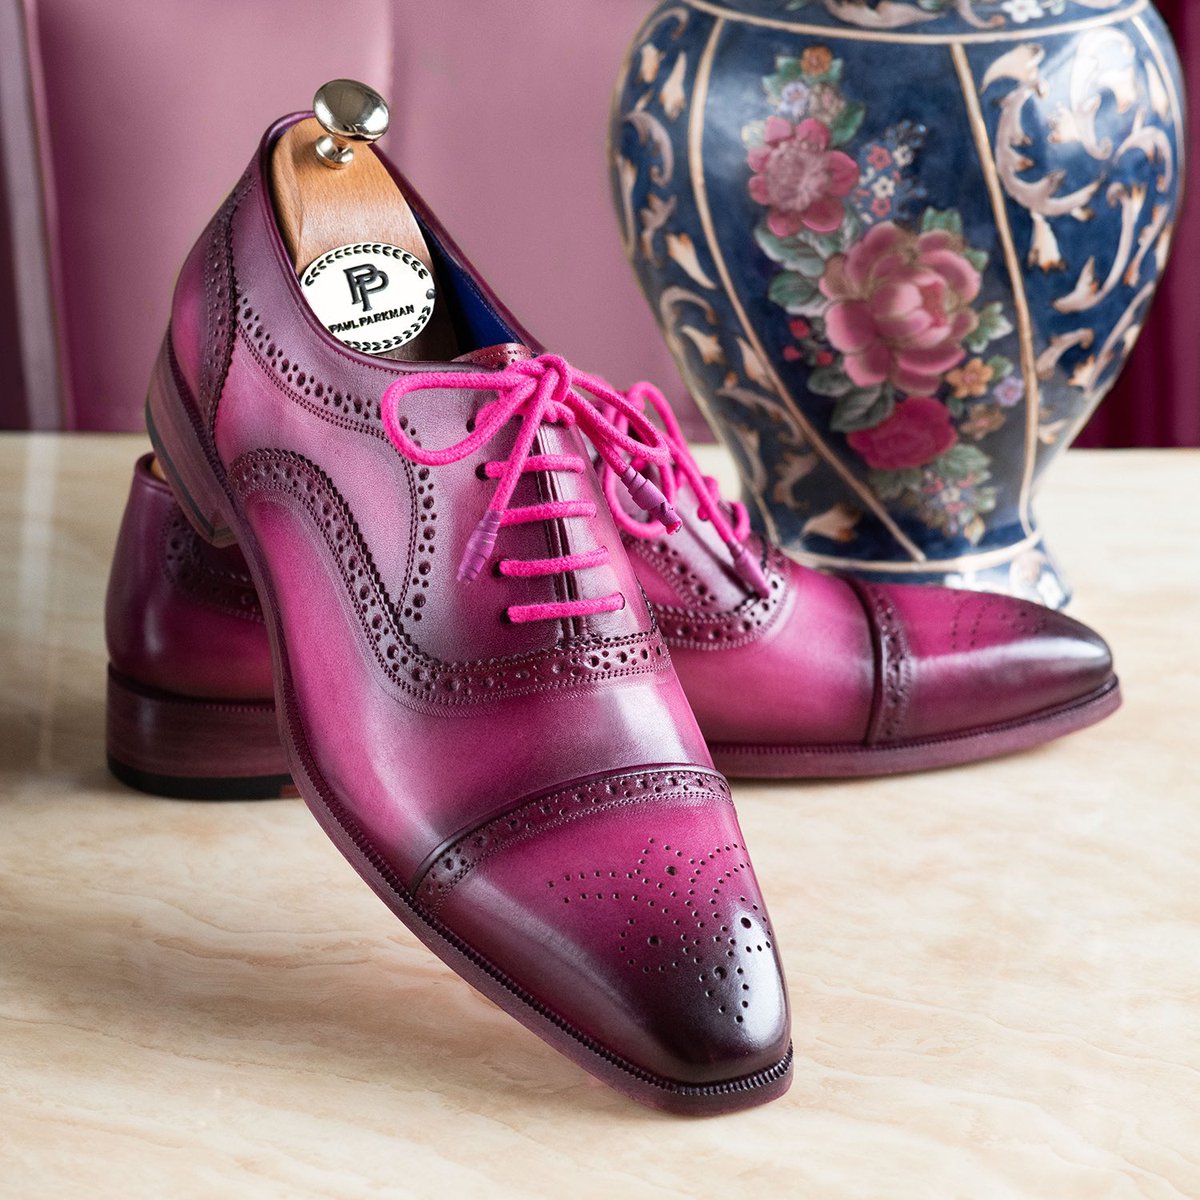 Paul Parkman Men's Purple Hand-Painted Cap-Toe Oxford Shoes

Website: paulparkman.com

#paulparkman #oxfordshoes #patinashoes #handmadeshoes #bespokeshoes #Luxuryshoes #mensshoes #goodyearwelted #menstyle